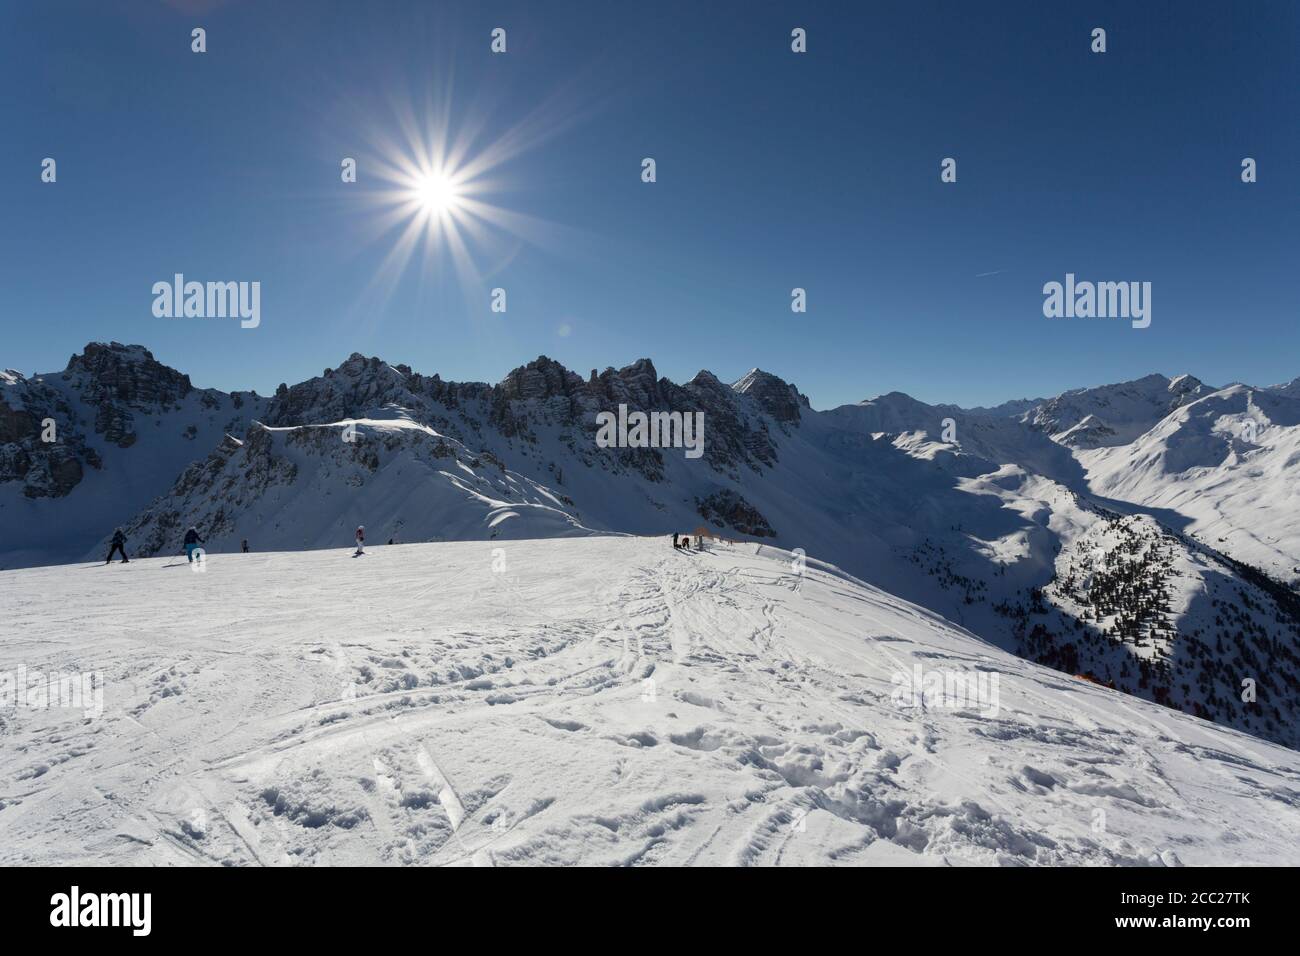 Austria, Innsbruck, View of Olympic ski piste Stock Photo